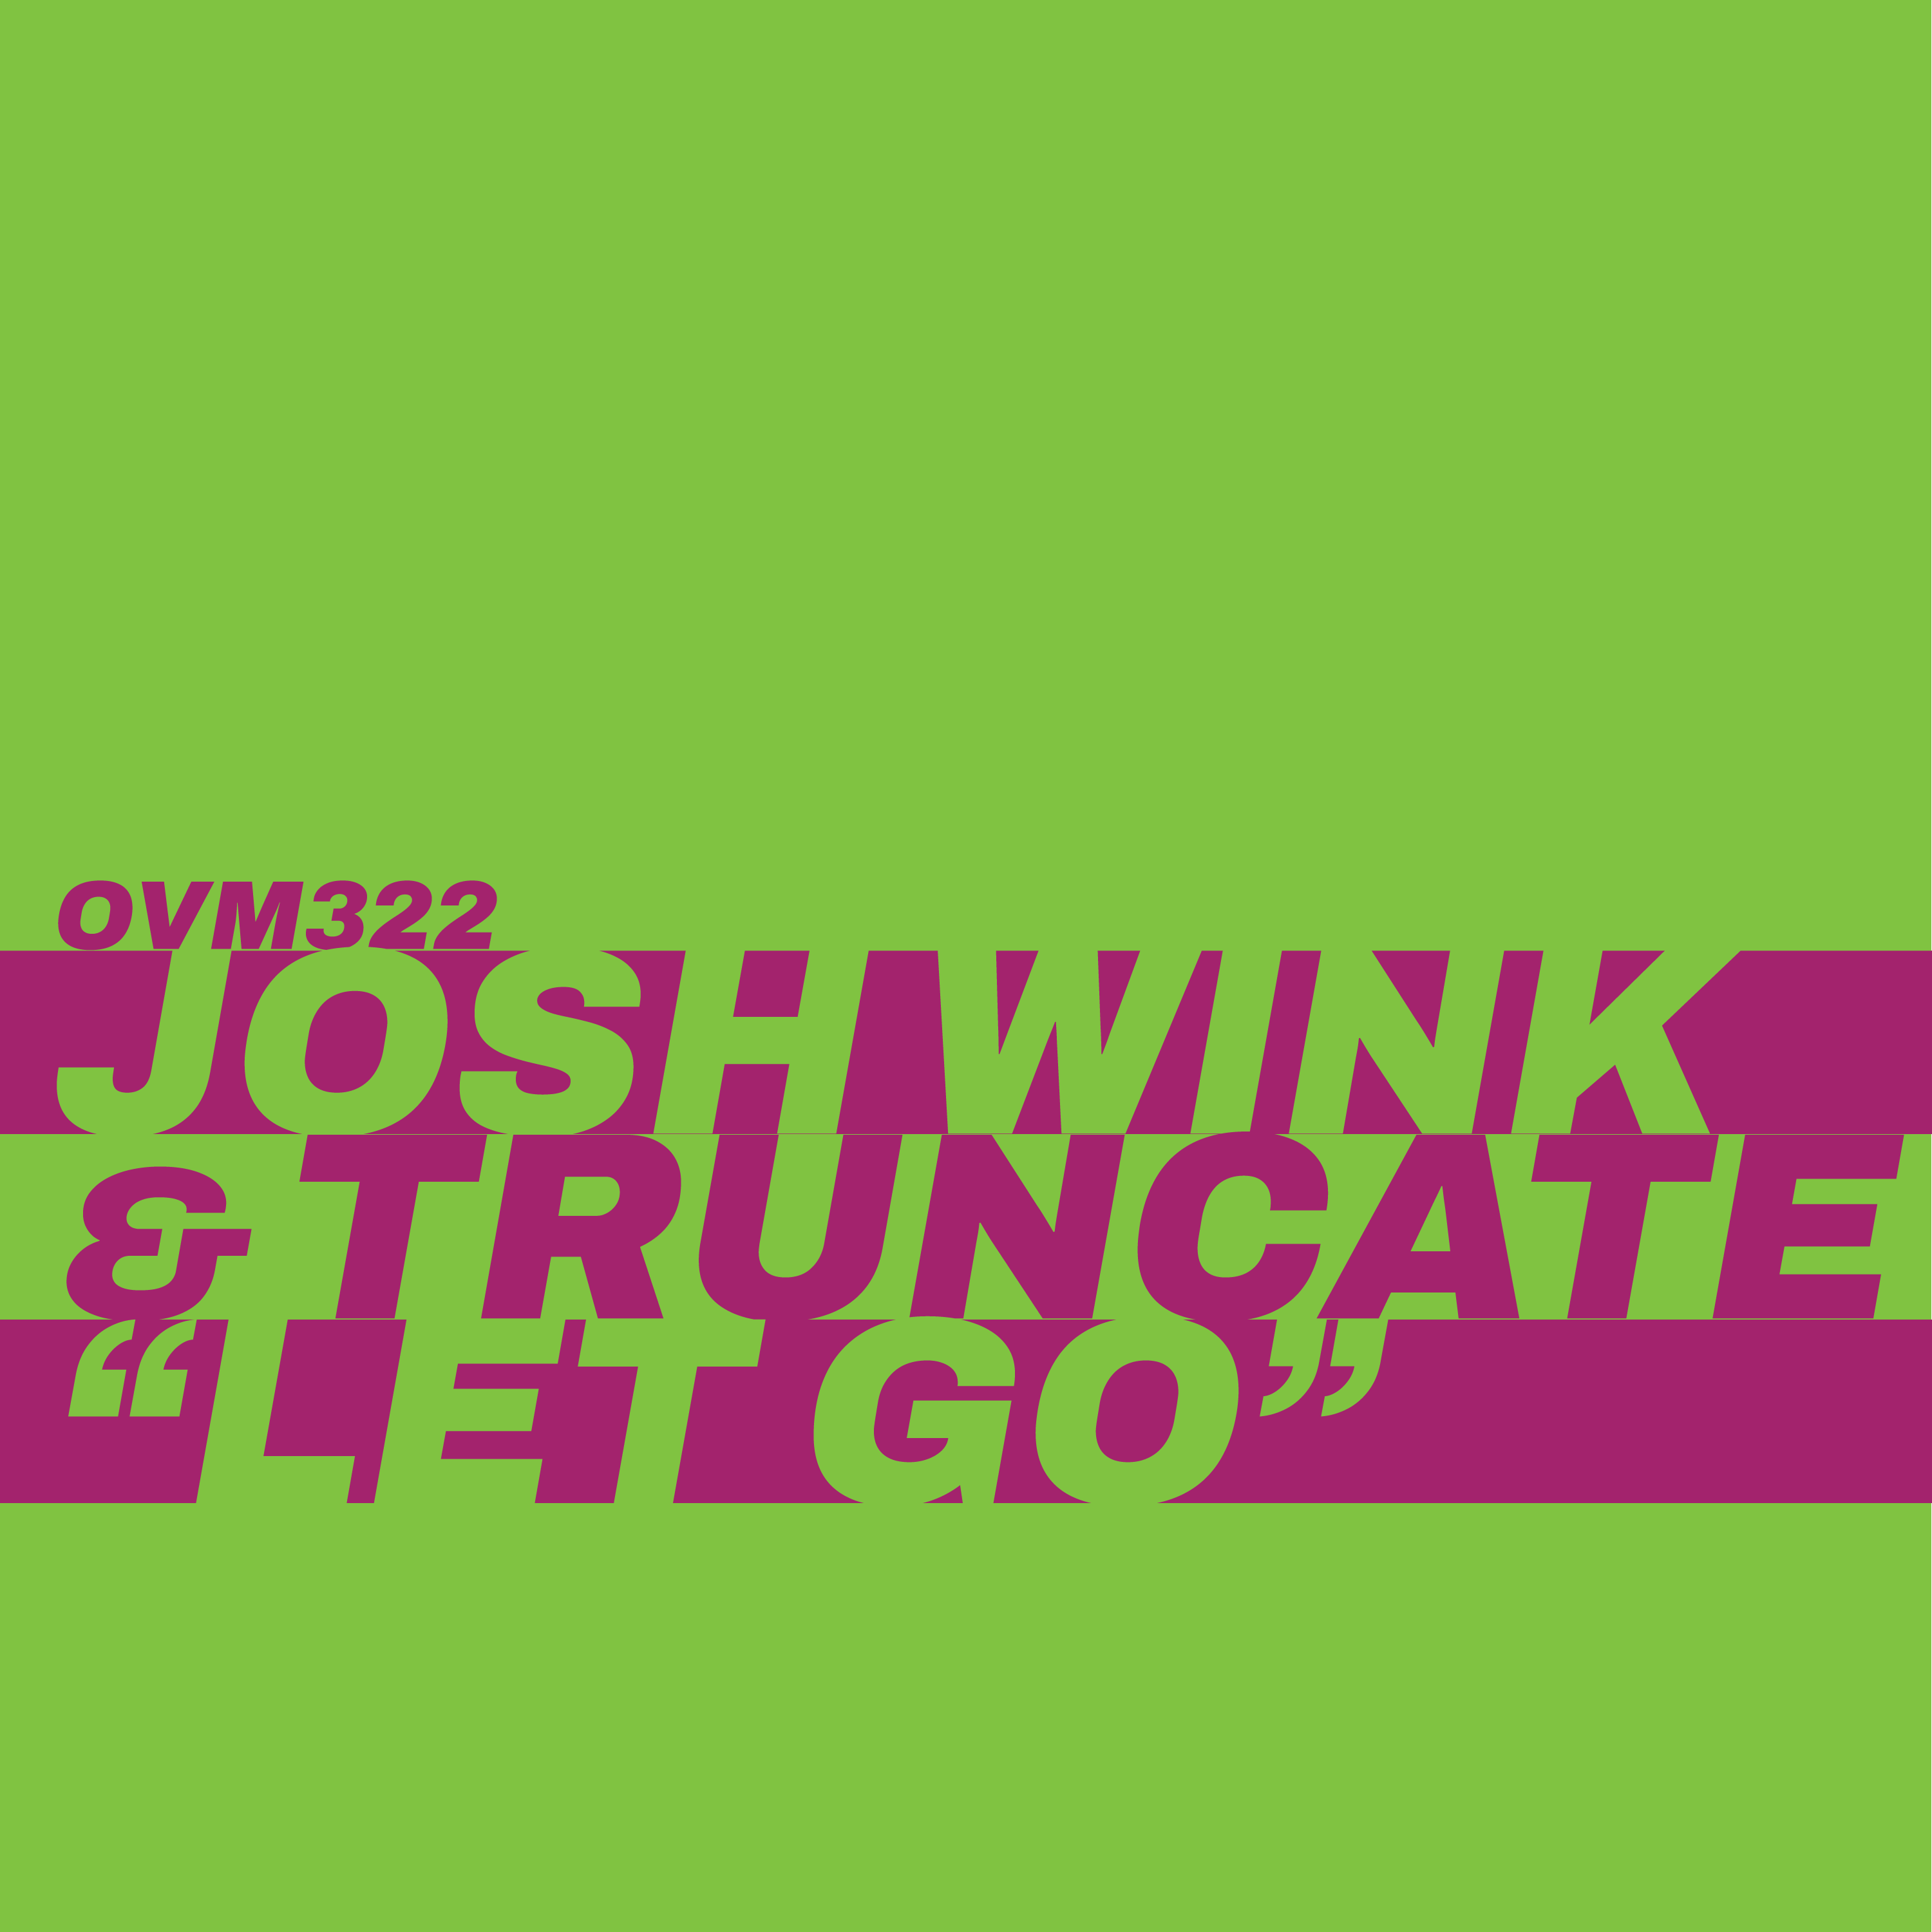 PACK-SHOT-Josh-Wink-Truncate-Let-Go-Ovum-Recordings